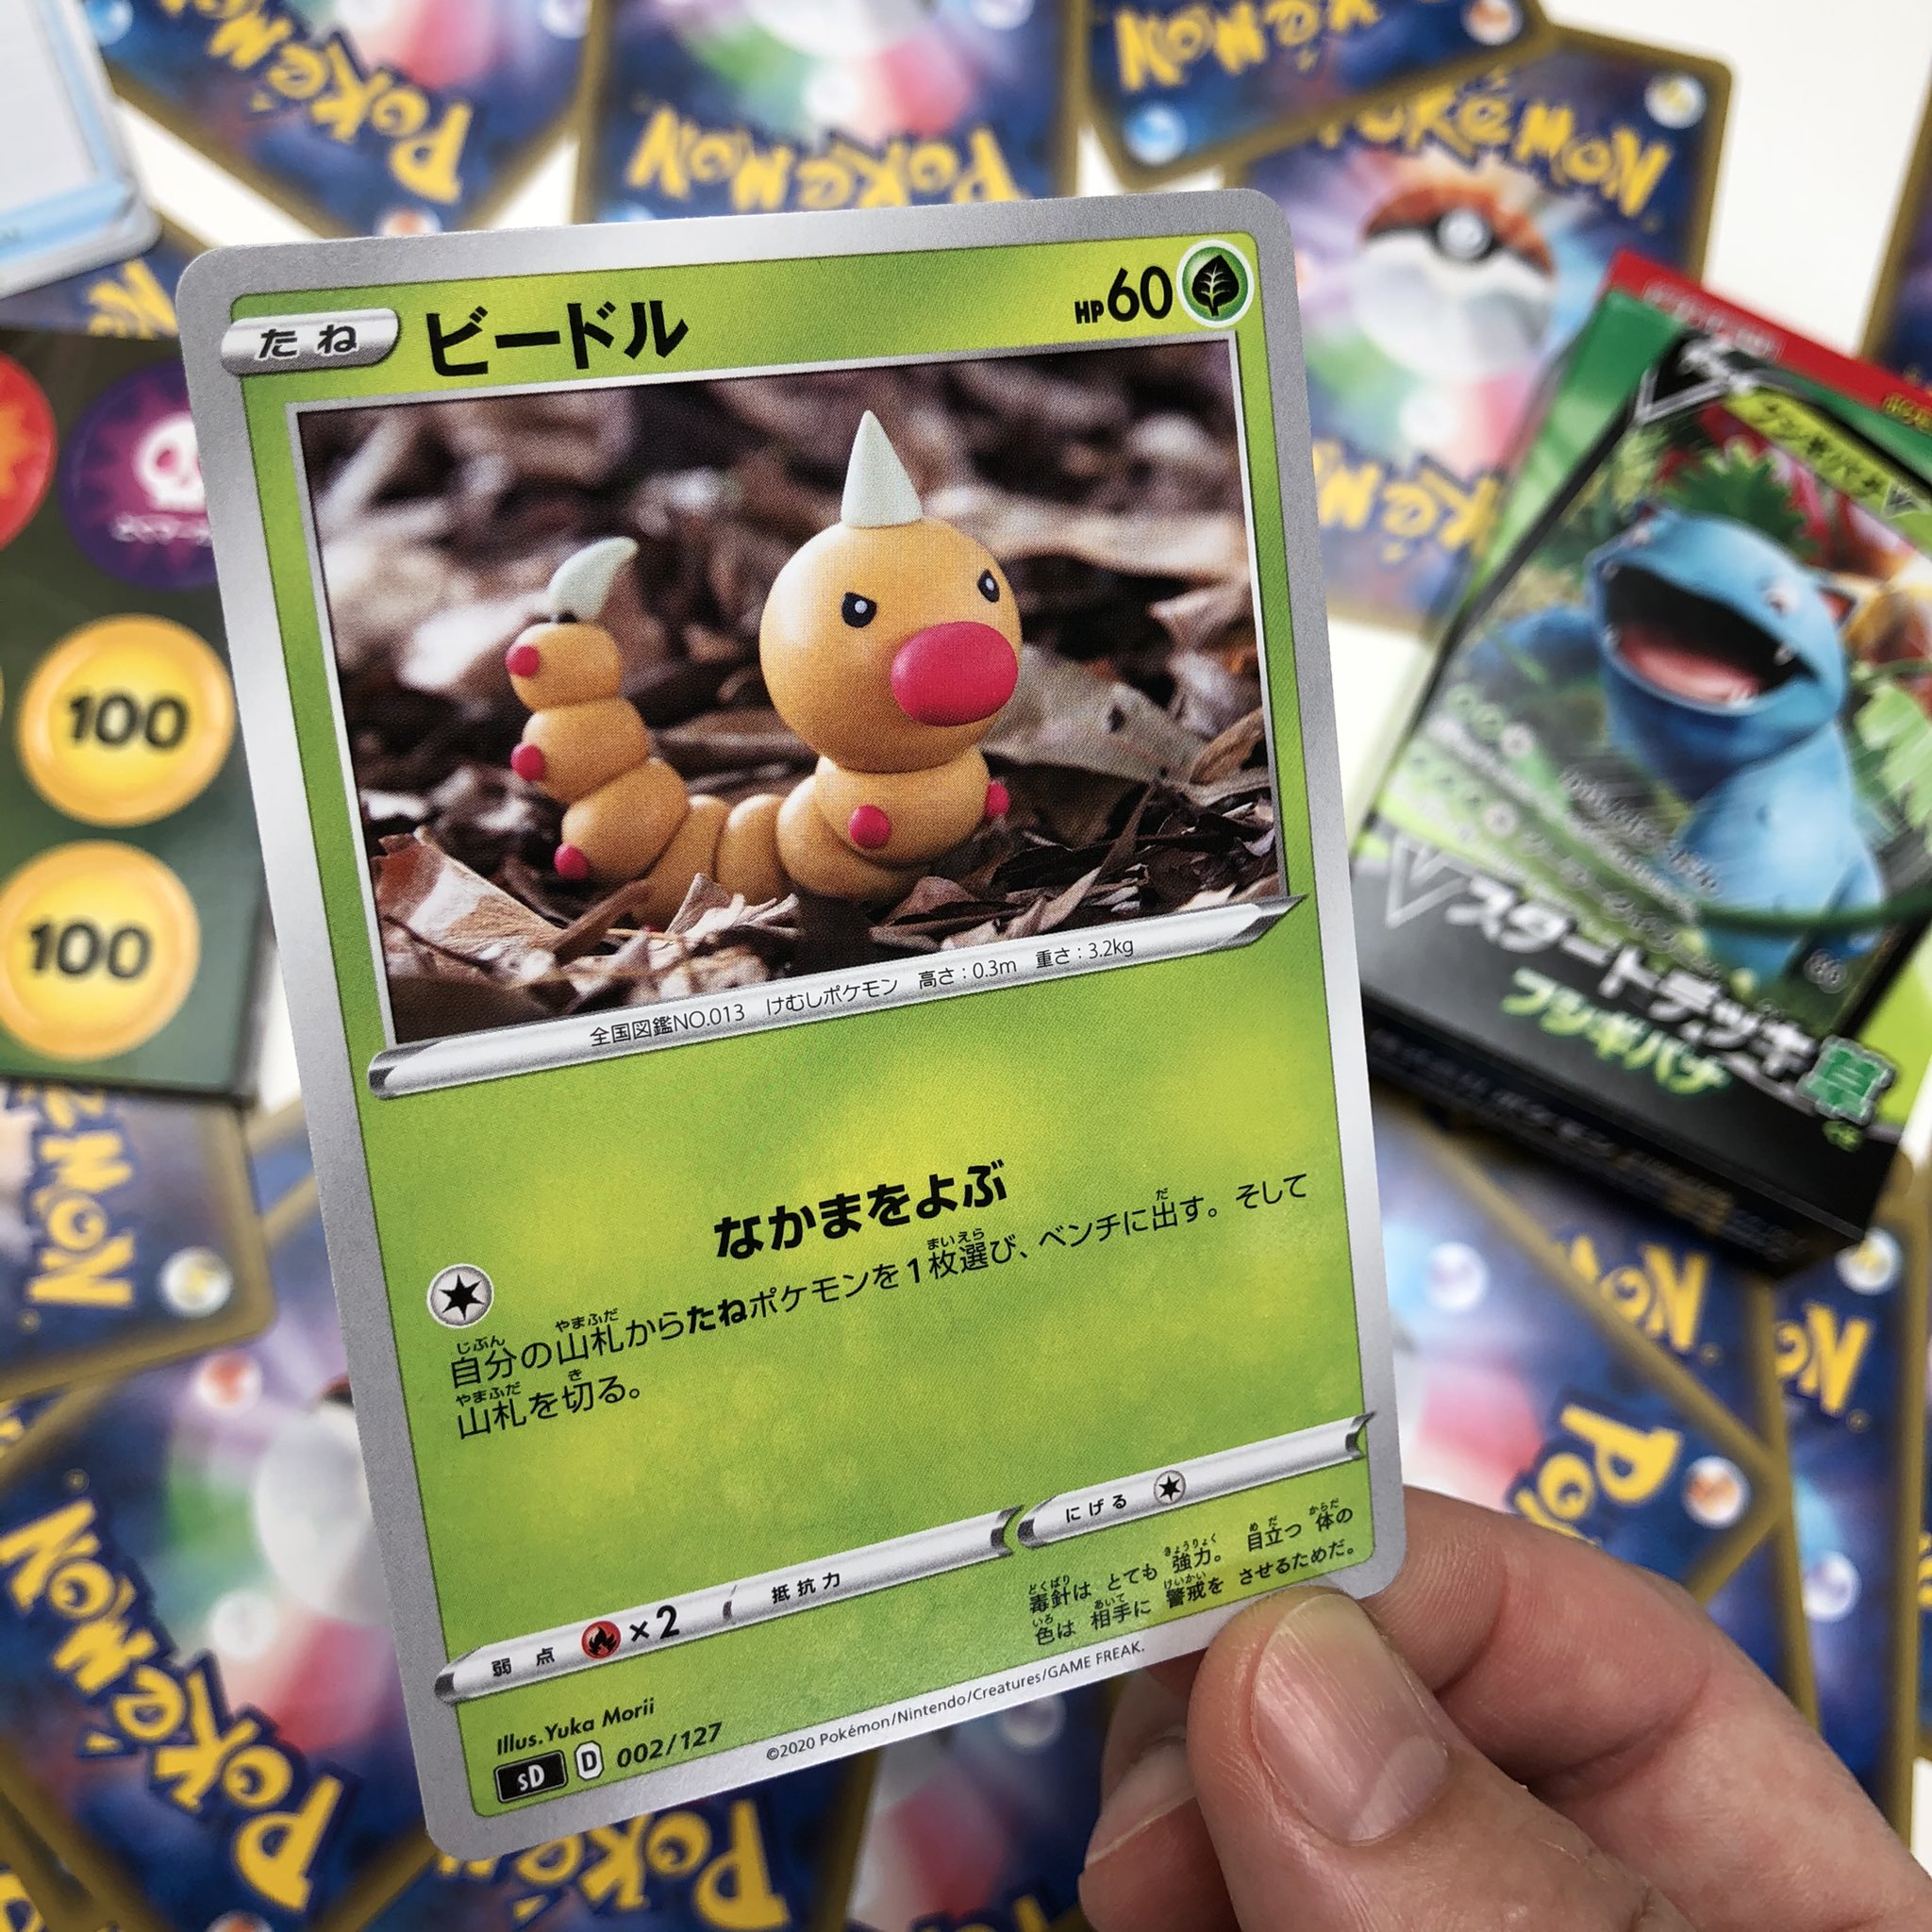 森井ユカ Yuka Morii The New Pokemon Card Has Gone Out It S Hand Made By Polymerclay たねポケモンの ビードル を 焼いて固める樹脂粘土で作りました 勇ましい表情です 強化拡張パック Vスタートデッキ 草 フシギバナ に入っているよ